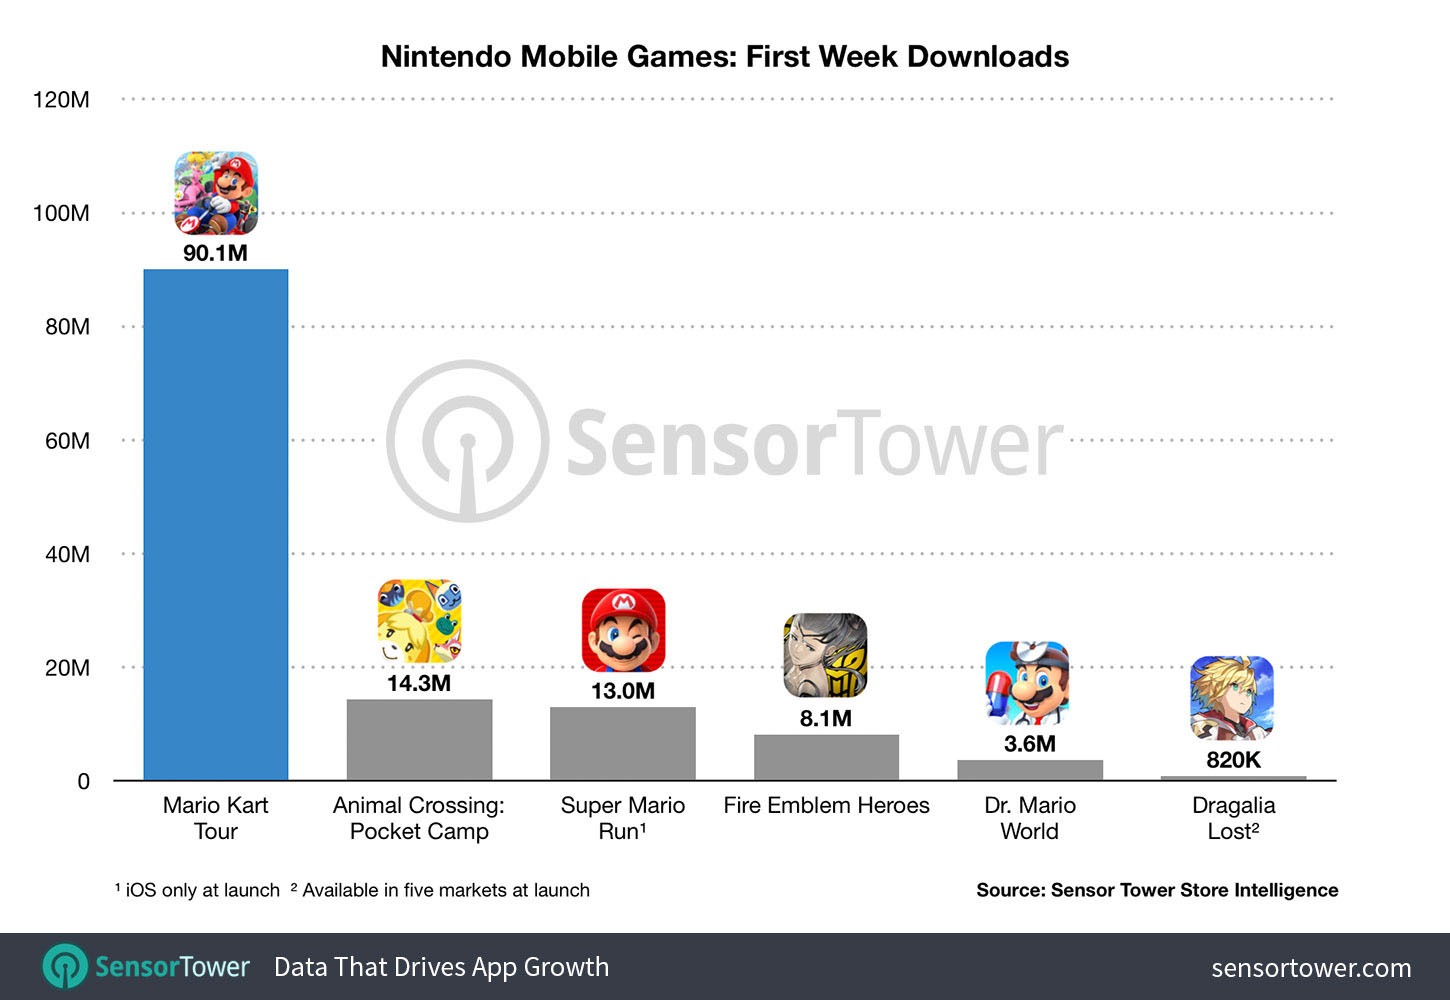 Mobilne Mario Kart znalazło się wyraźnie na czele, jeśli chodzi o debiuty mobilnych gier Nintendo. - Mario Kart Tour nadal dominuje - ponad 90 mln pobrań w tydzień - wiadomość - 2019-10-03